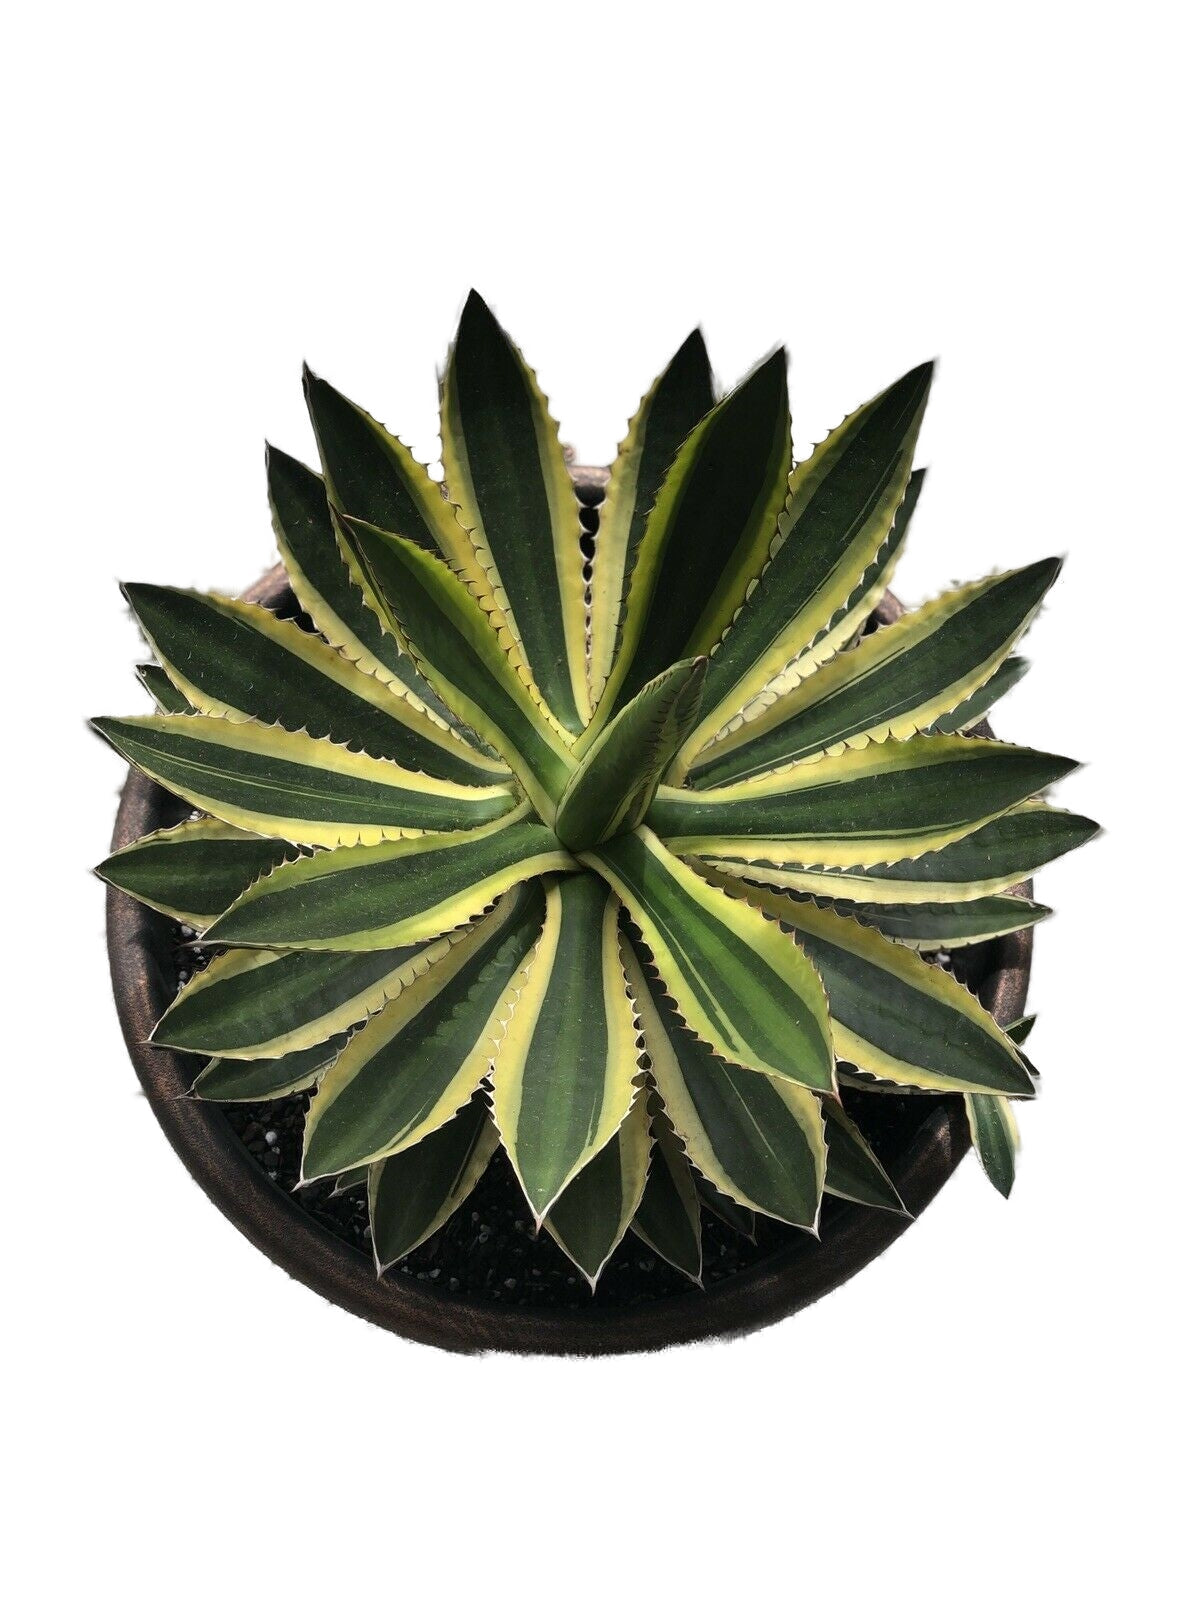 Agave Lophantha 'Quadricolor' (Quadricolor Century Plant) Live Plant